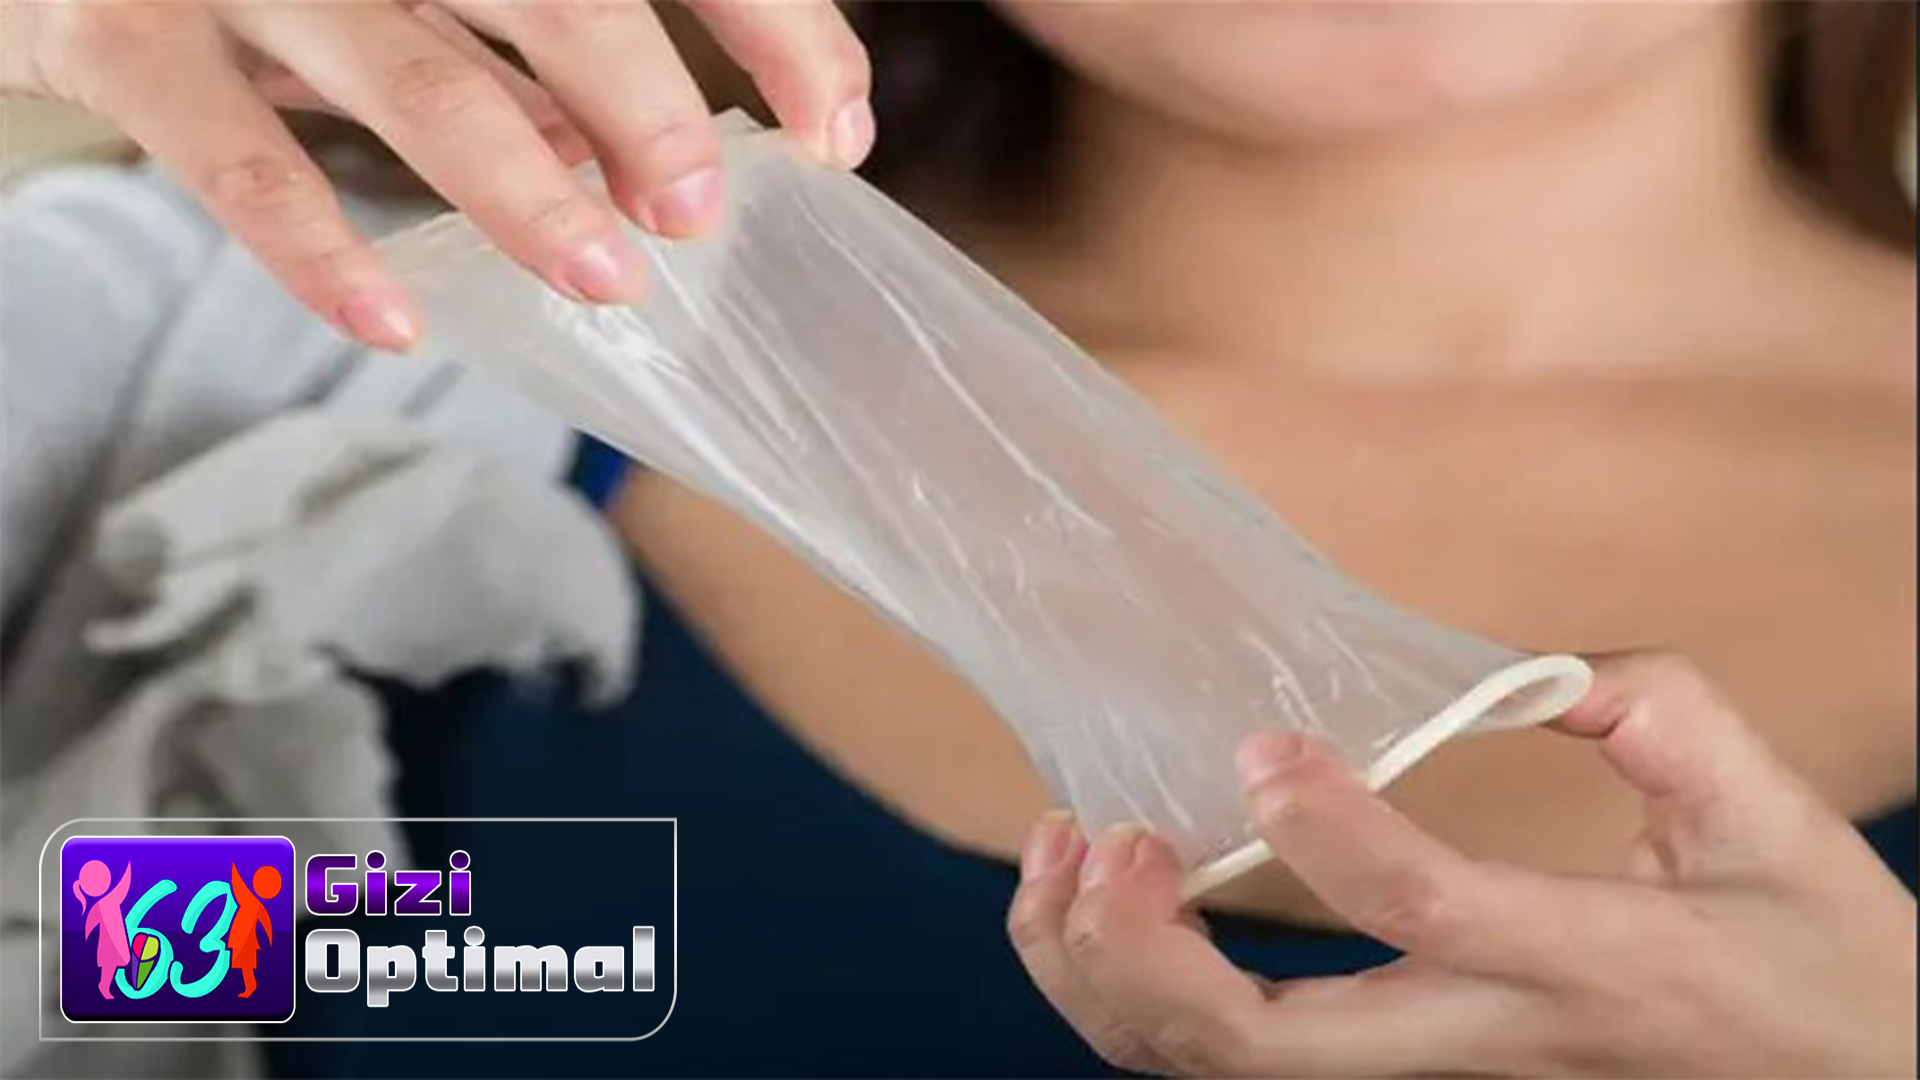 Kondom Wanita: Beberapa Informasi yang Perlu Diketahui